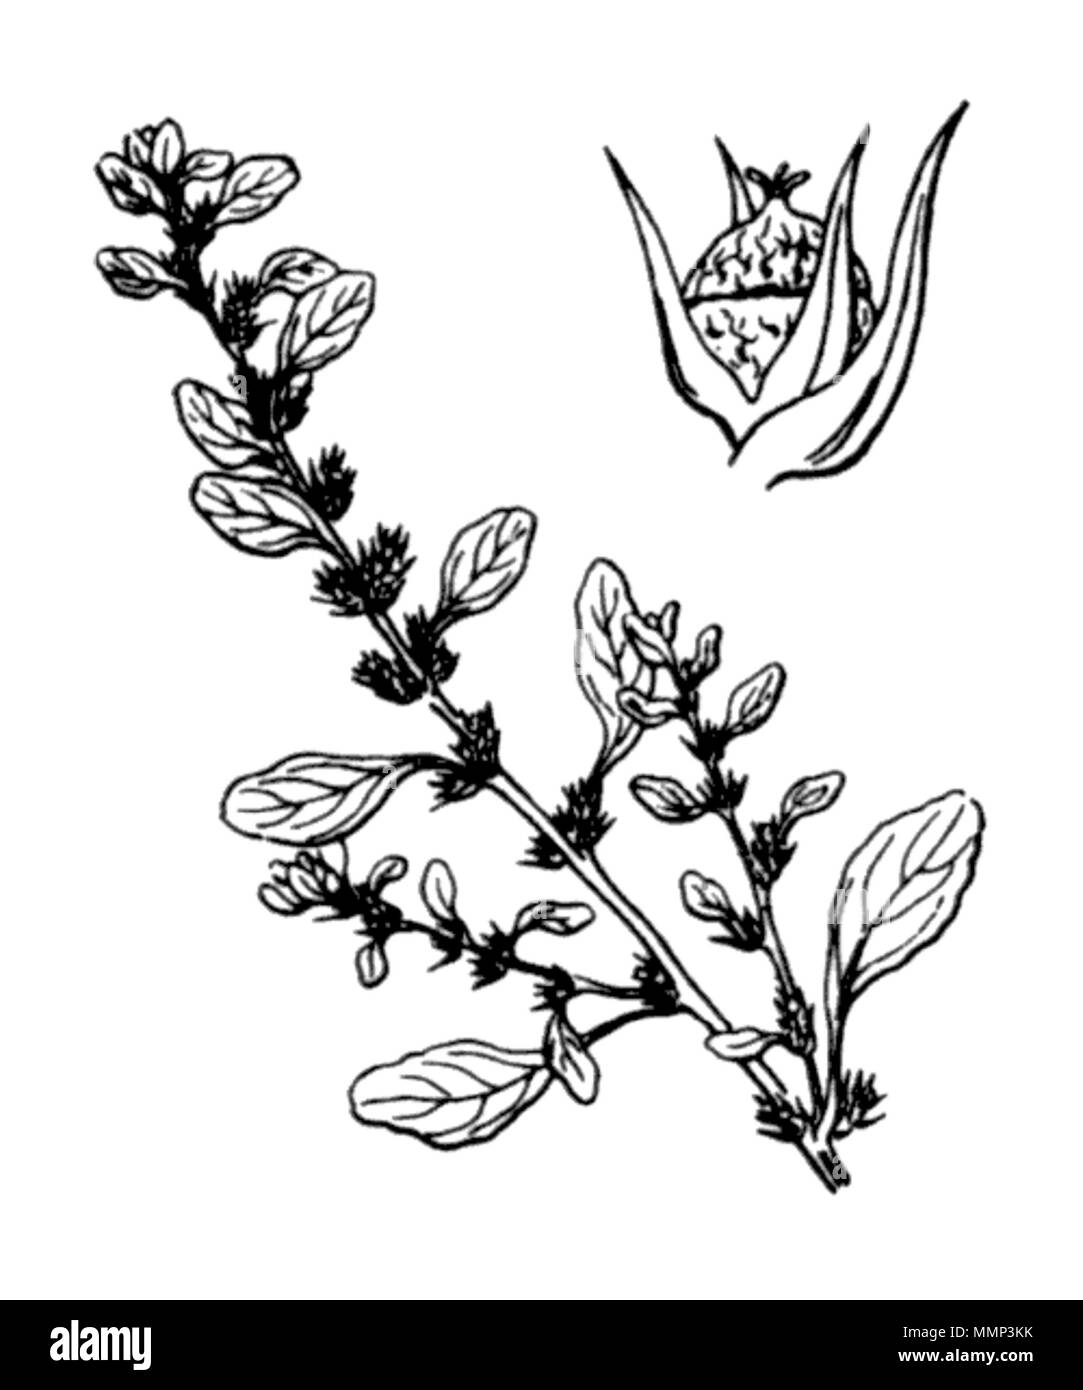 . English: (Gb)Prostate Pigweed, (Us)Tumble Pigweed (Amaranthus albus), an etching by Hippolyte Coste (1858-1924), Flore descriptive et illustrée de la France, de la Corse et des contrées limitrophes, published from 1900 to 1906 by Paul Klincksieck. Français : Amaranthe blanche (Amaranthus albus), gravure d'Hippolye Coste (1858-1924), Flore descriptive et illustrée de la France, de la Corse et des contrées limitrophes, publié de 1900 à 1906 aux éditions Paul Klincksieck. (Es)Bledo blanco, (It)Amaranto bianco, (Nl)Witte Amarant, (De)Weisser Fuchsschwanz 41 Amaranthus albus Coste 3067 Stock Photo